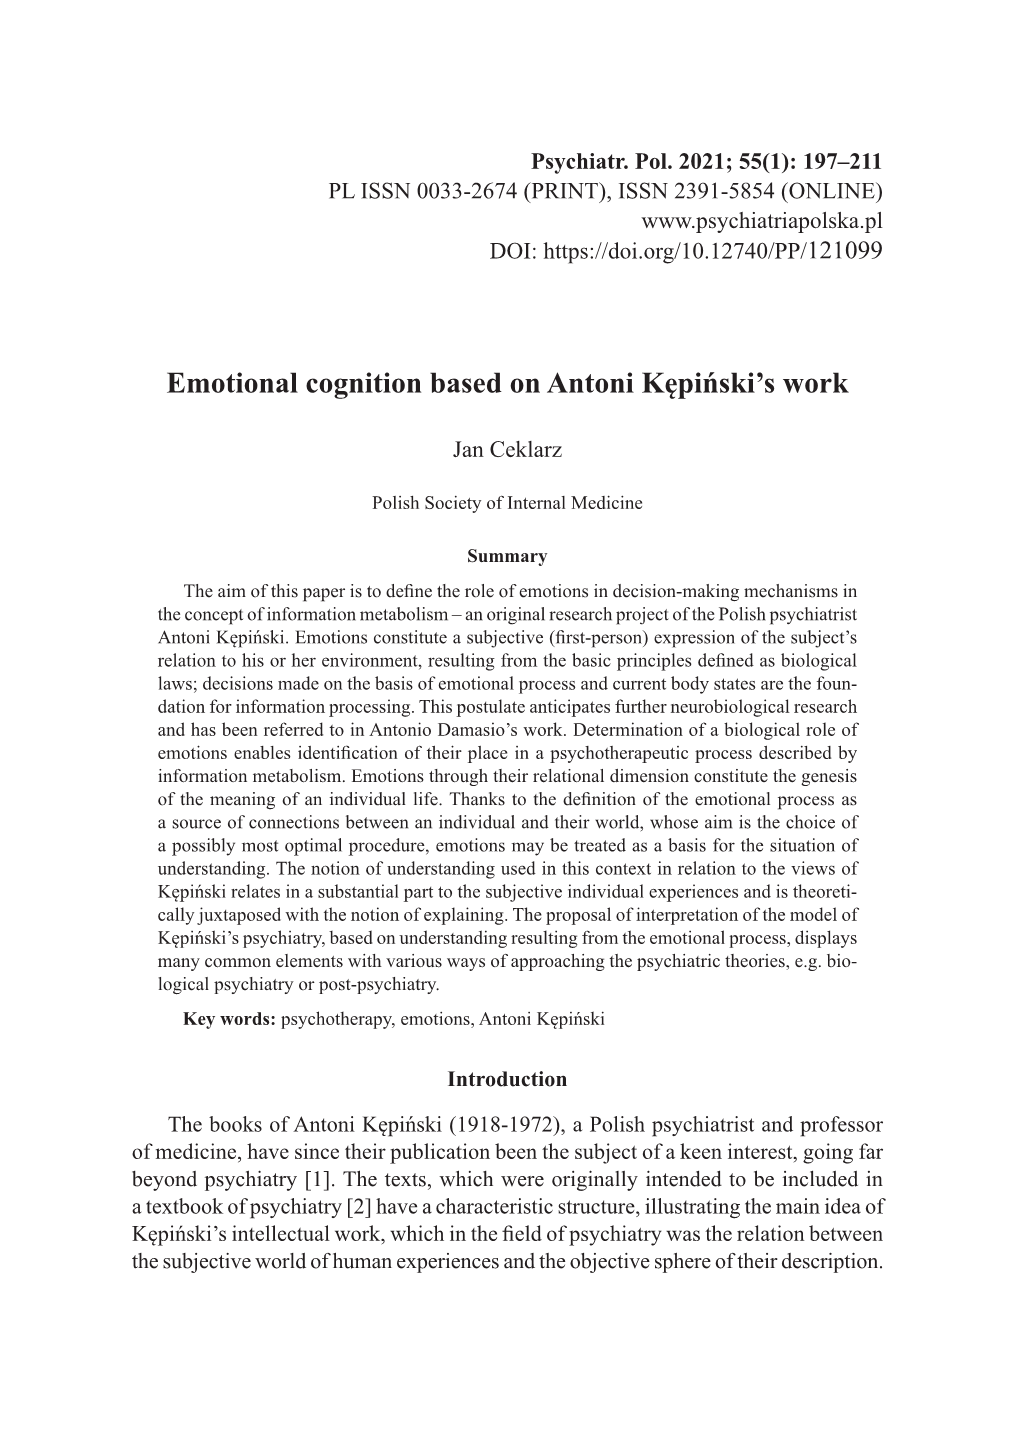 Emotional Cognition Based on Antoni Kępiński's Work